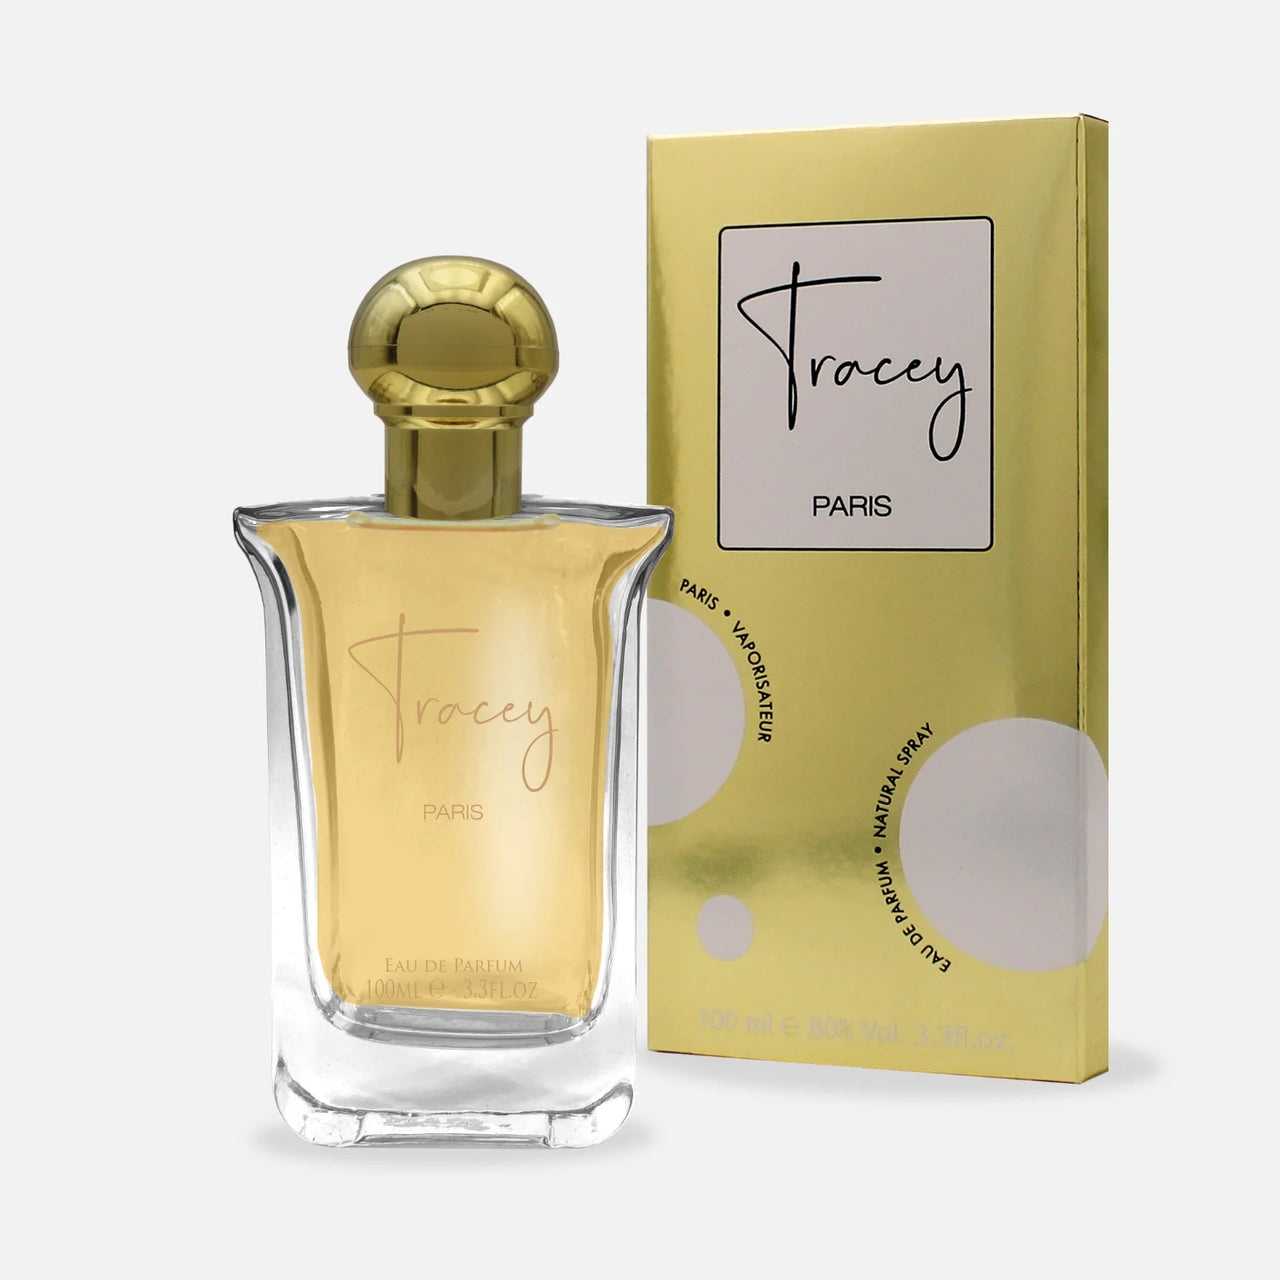 Tracey 100 ml - Eau de Parfum